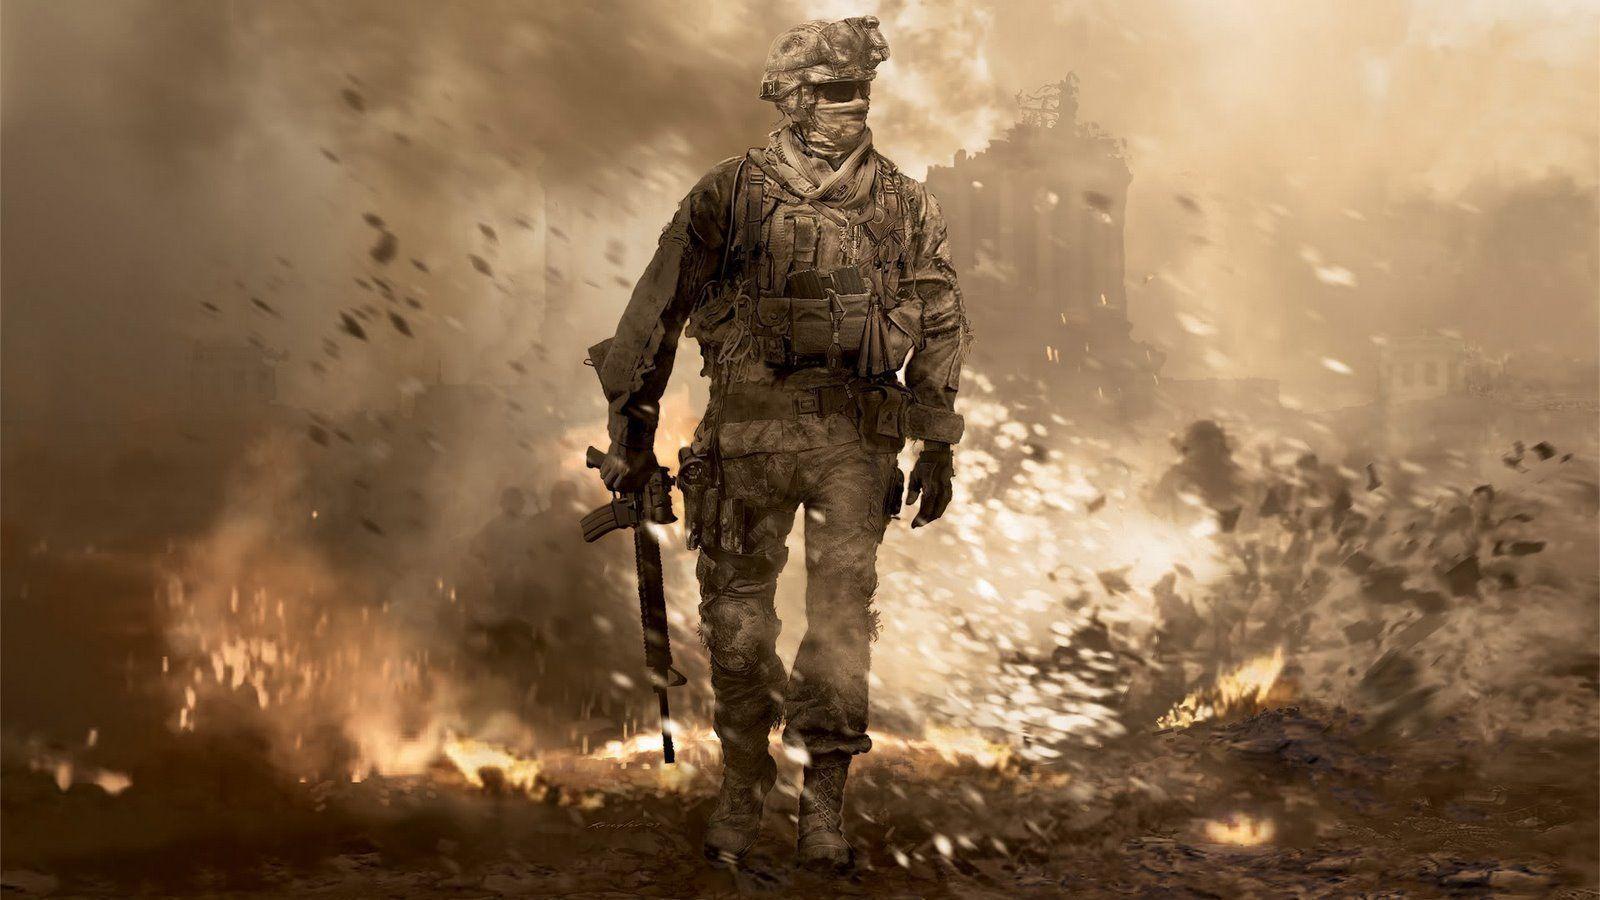 Wallpaper HD de Halo, Gears of War y Call of Duty!!